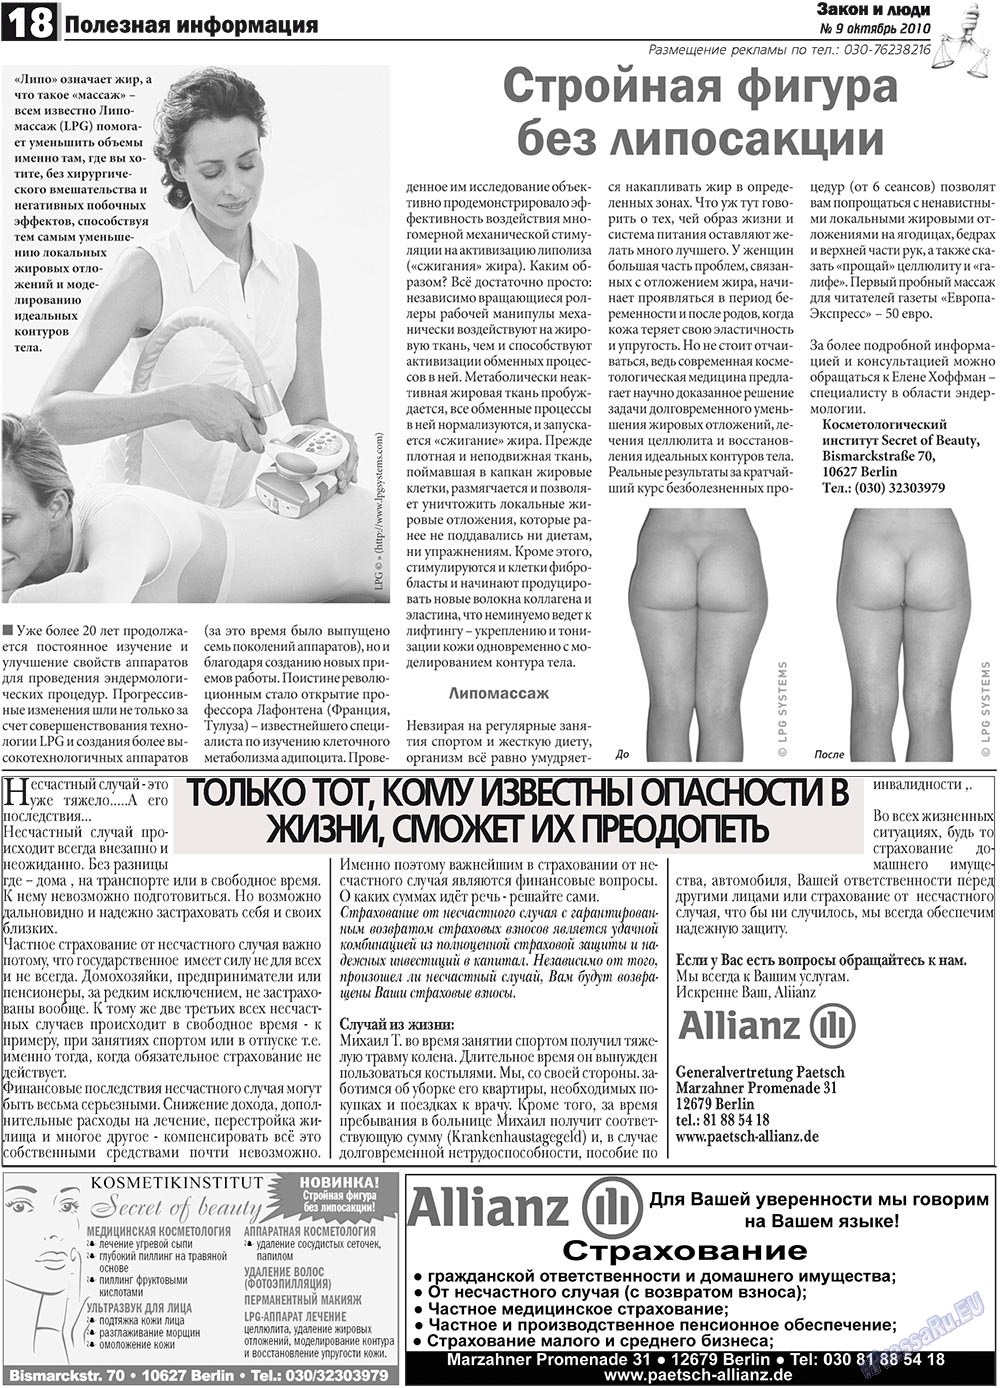 Закон и люди, газета. 2010 №9 стр.18